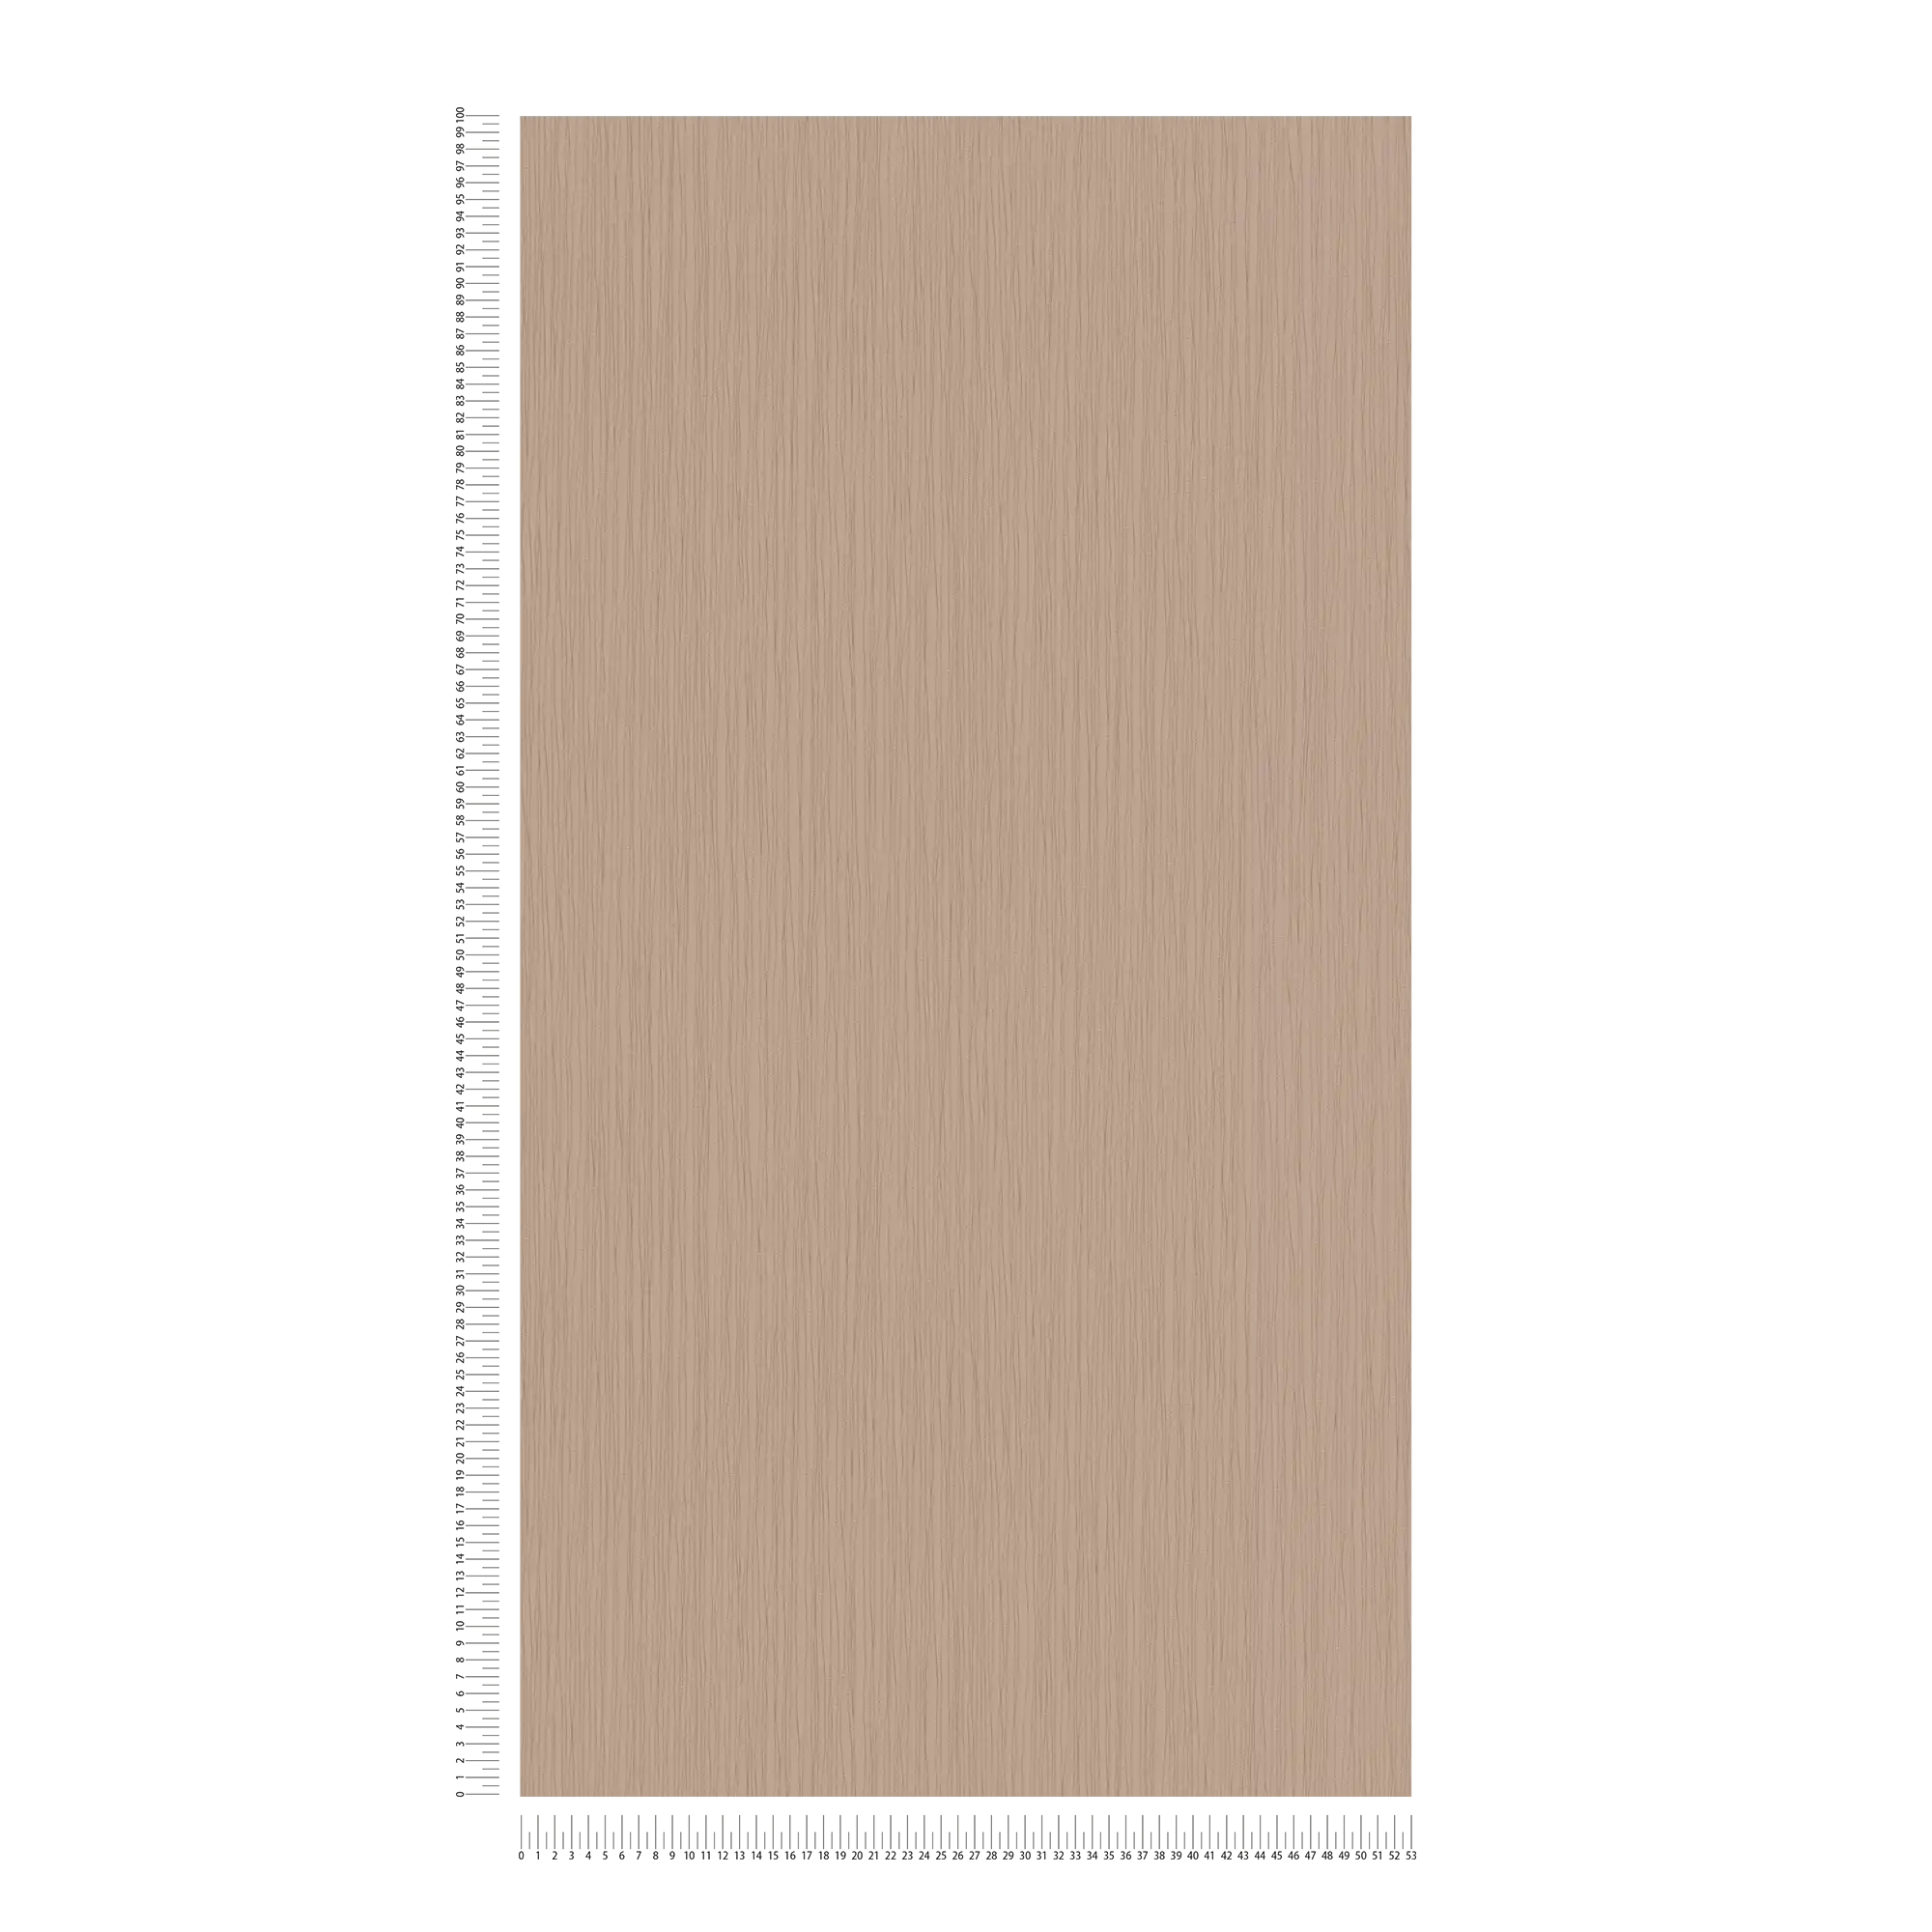             Papel pintado marrón con líneas metálicas y estampado en relieve
        